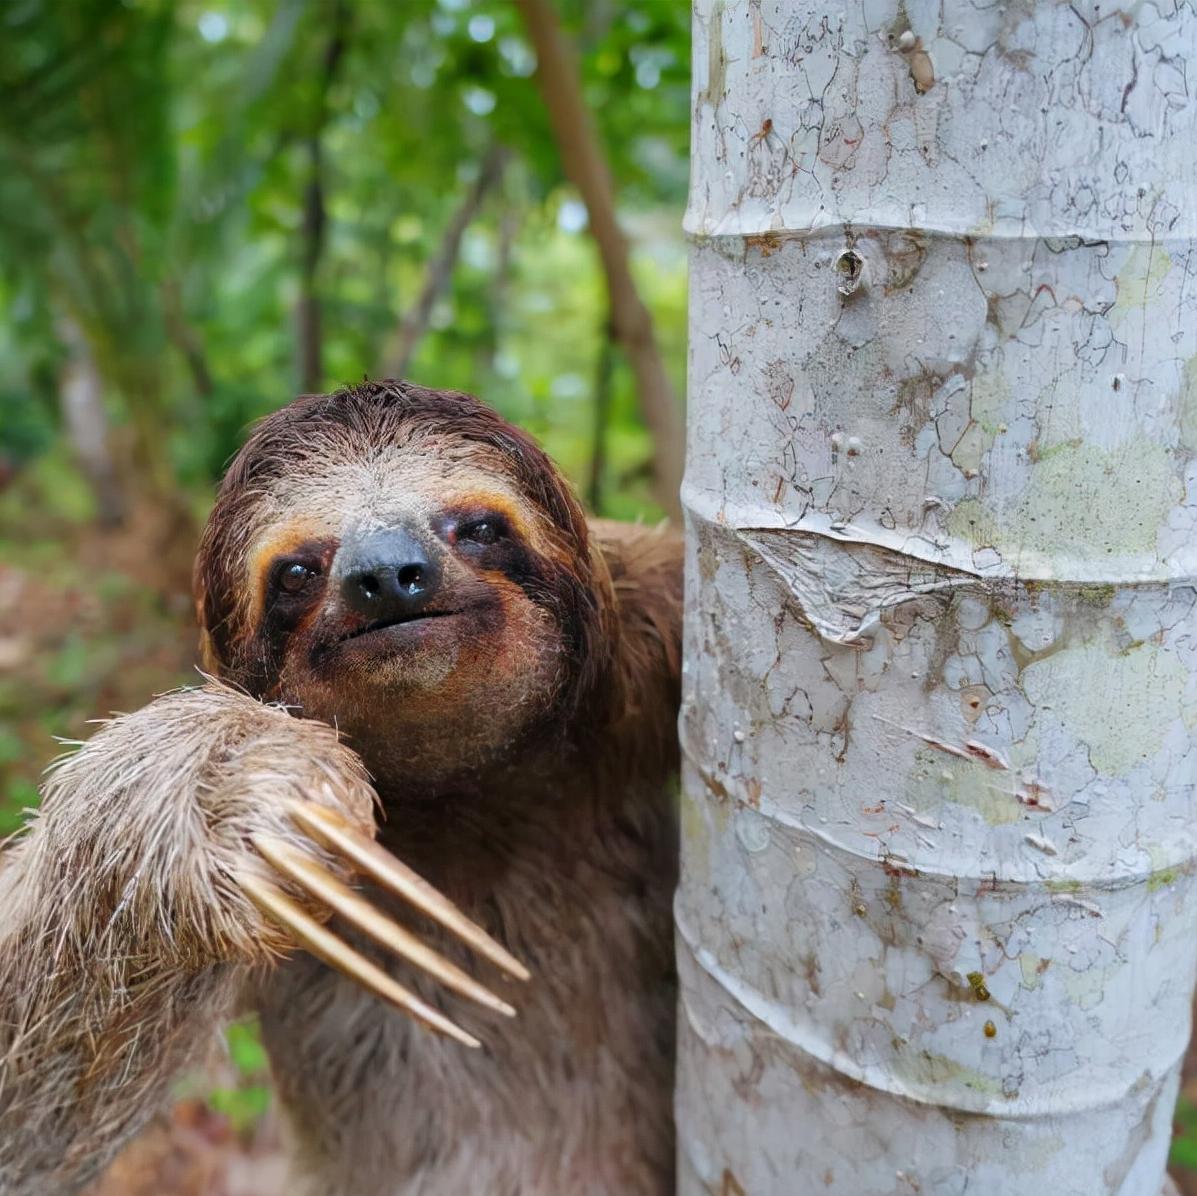 微笑的树懒,哥斯达黎加 (© Lukas Kovarik/Shutterstock) | 必应每日高清壁纸 - 精彩,从这里开始